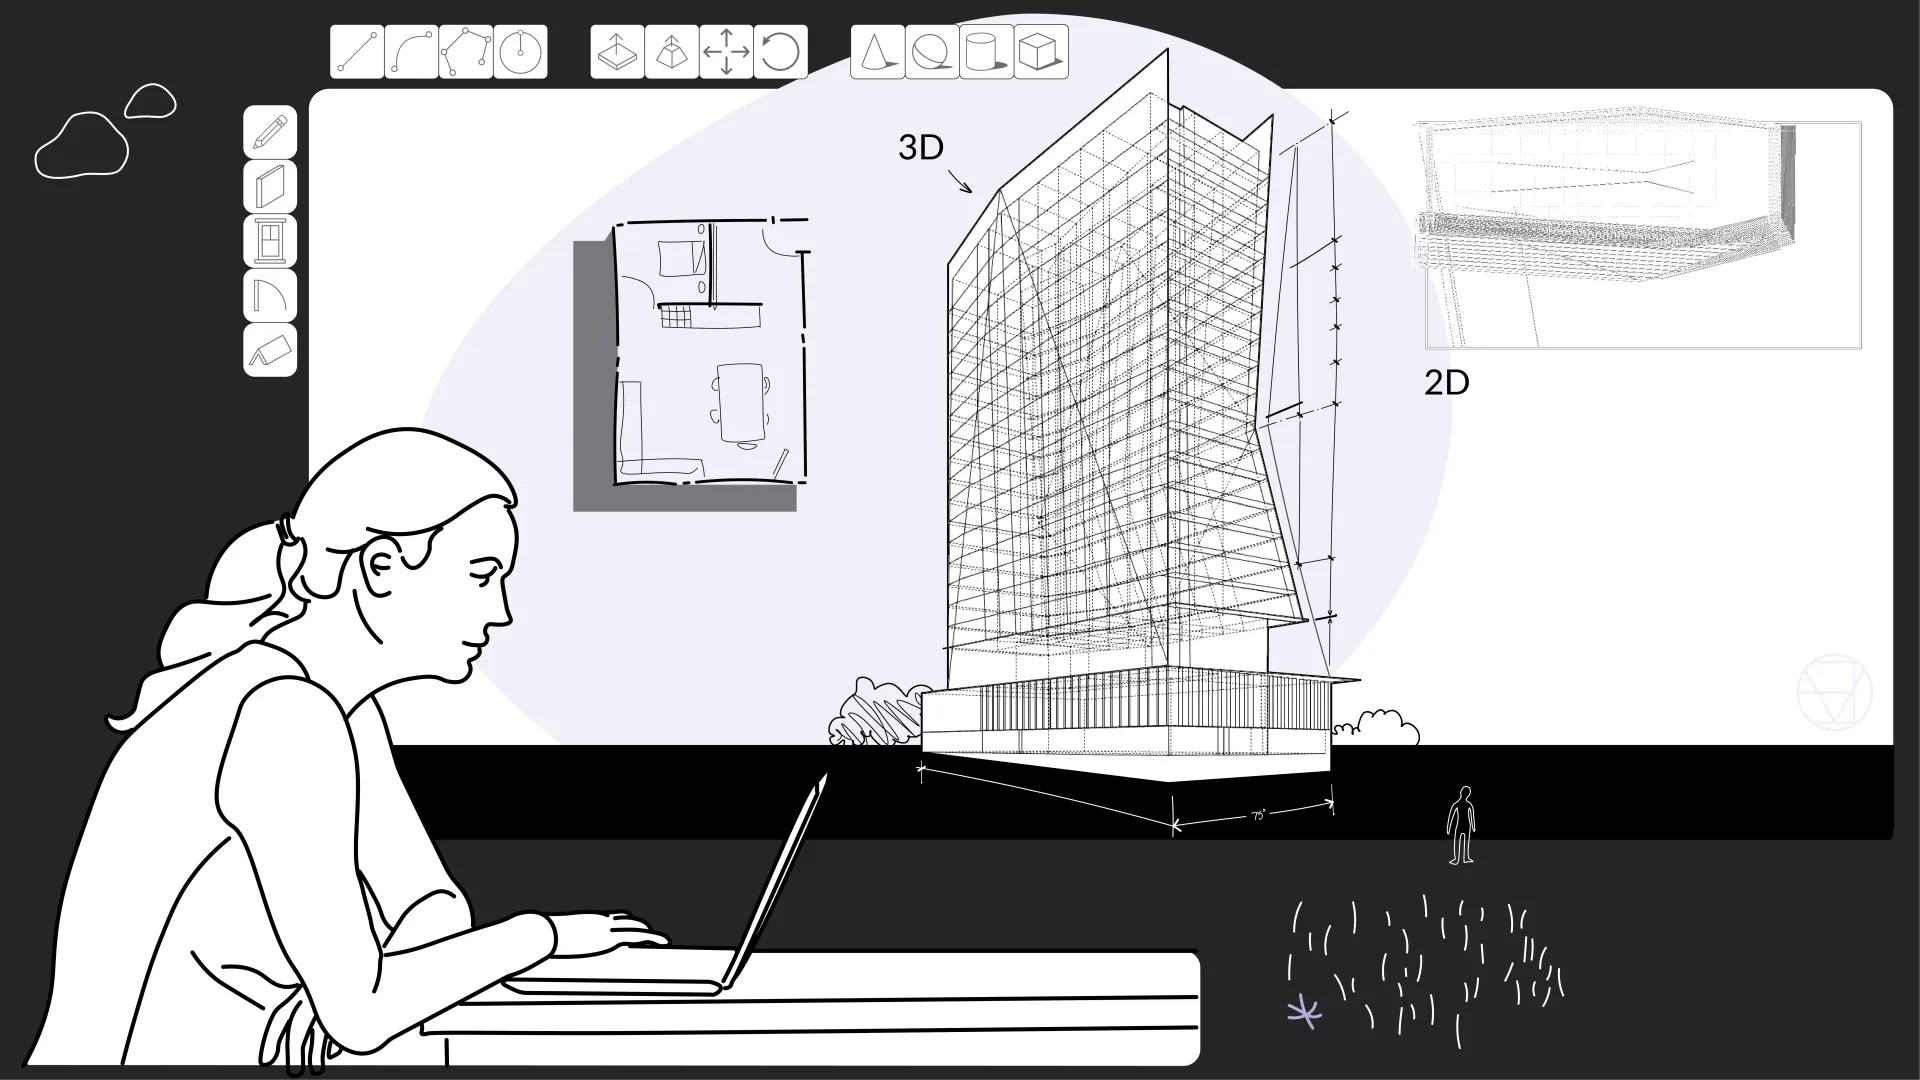 person at a computer looking at a building drawing mockup